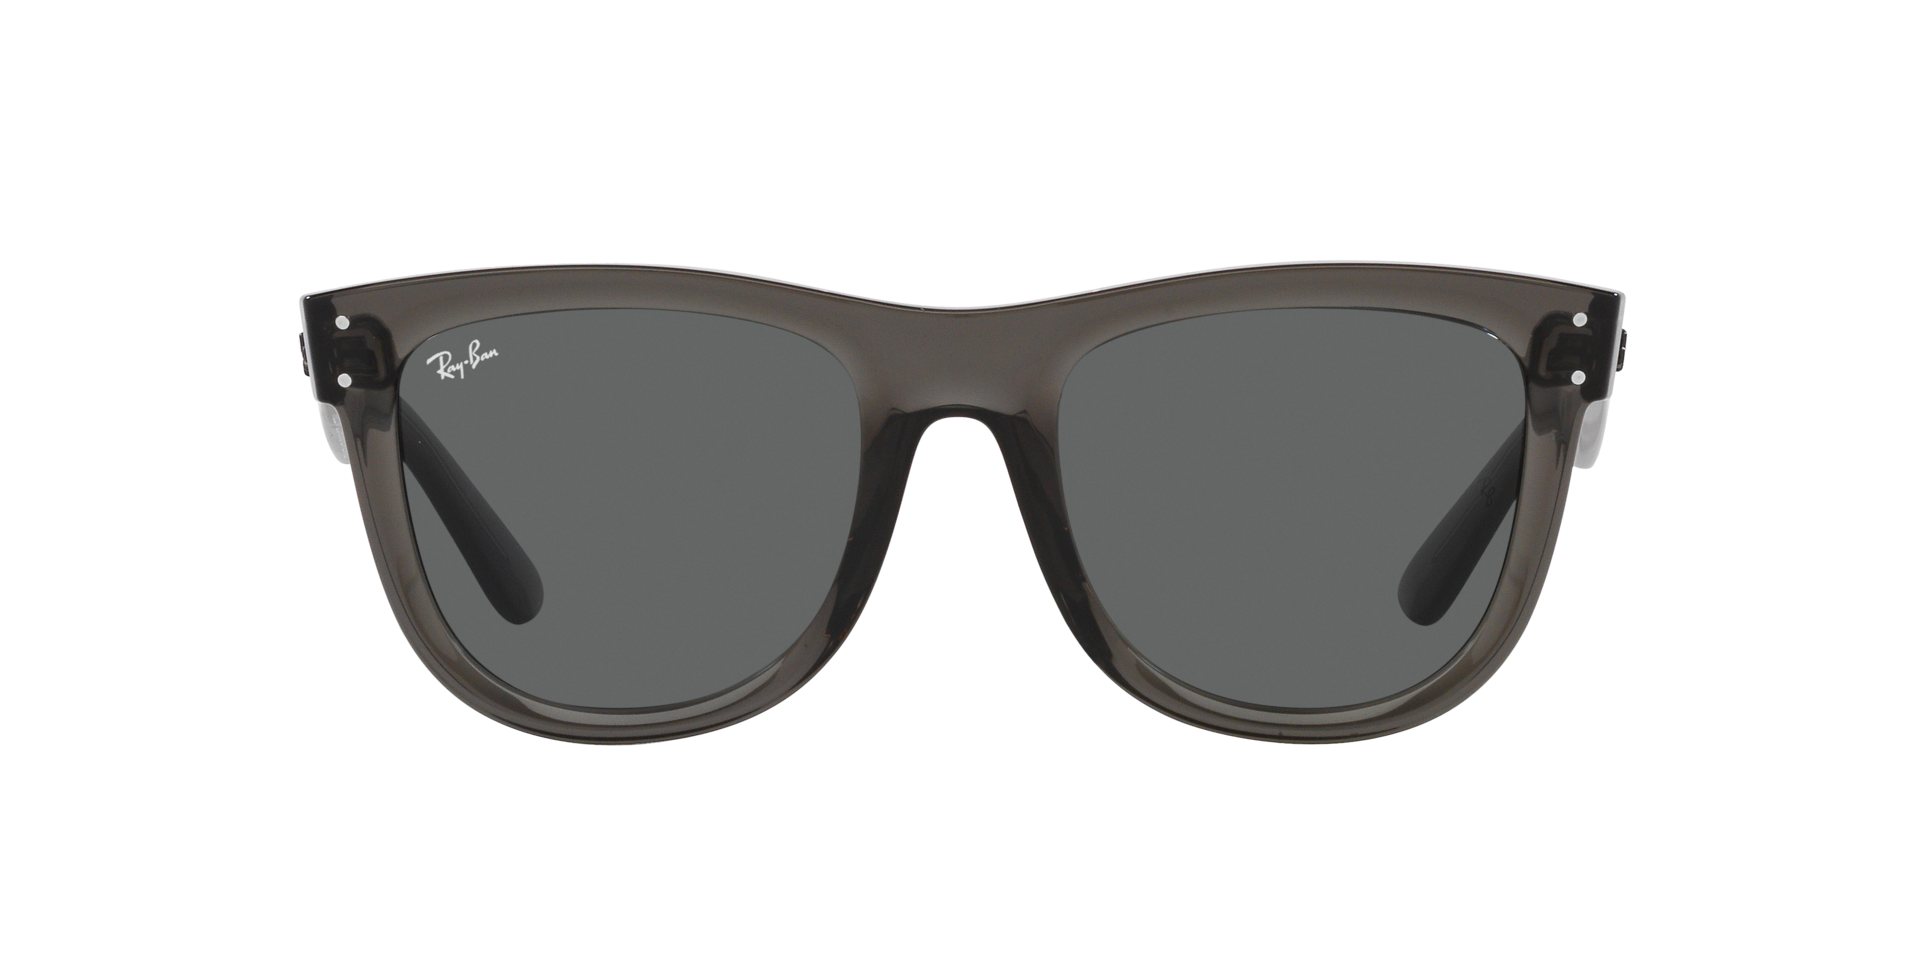 Das Bild zeigt die Sonnenbrille  0RBR0502S 6707GR von der Marke Ray Ban in transparent  dunkelgrau.